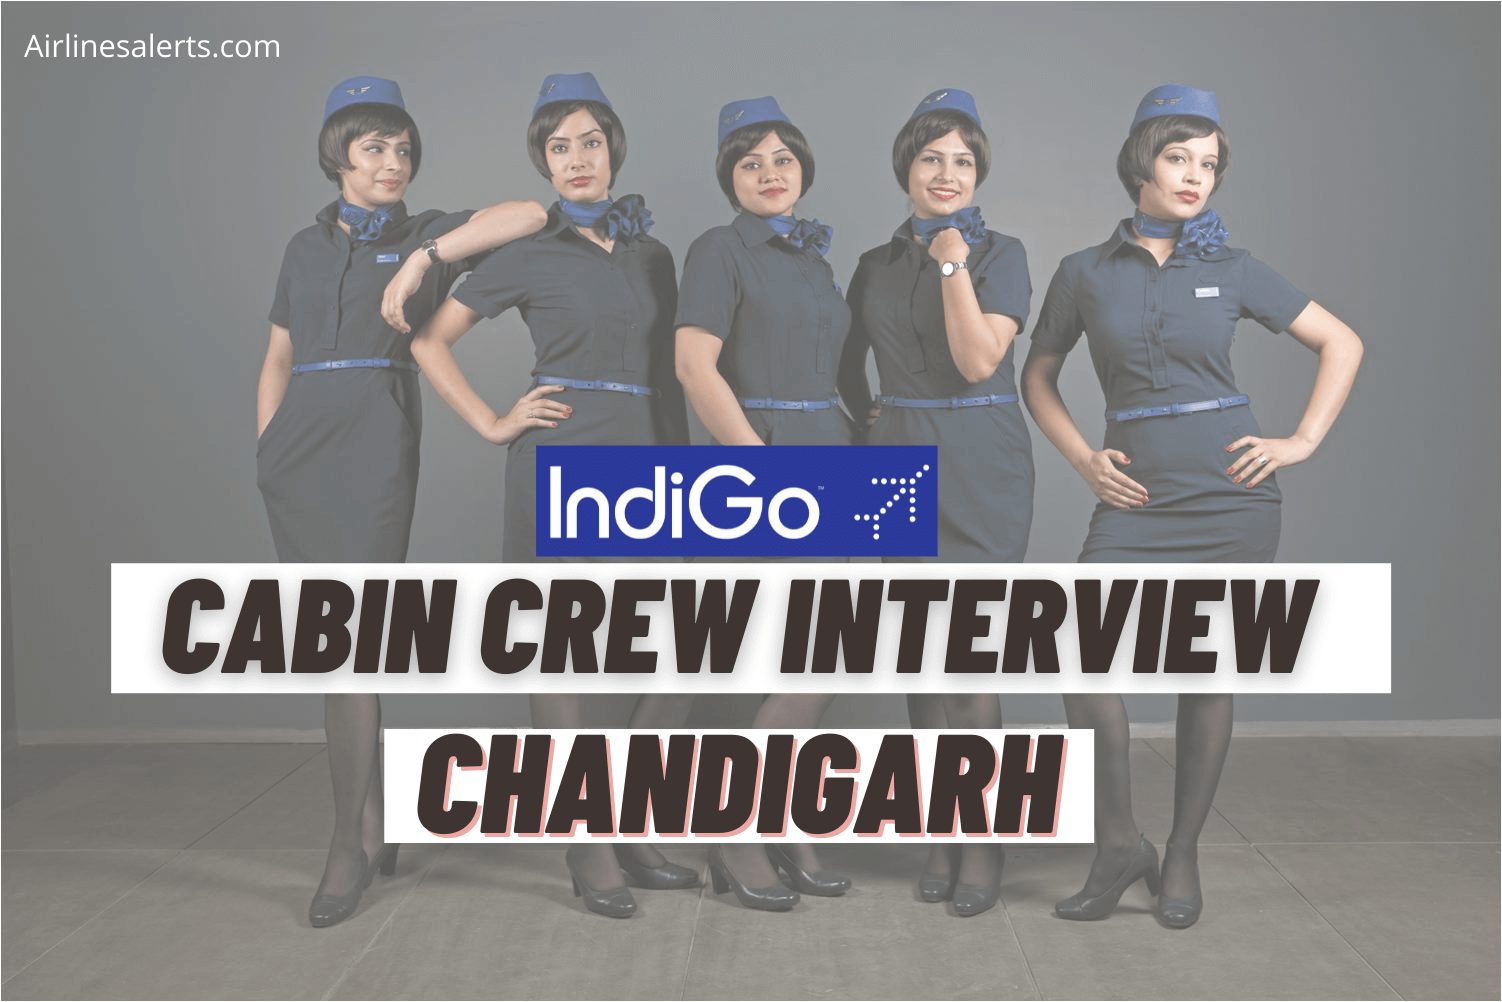 Indigo Cabin Crew Chandigarh Recruitment Direct Interview (Dec) - Apply Online 